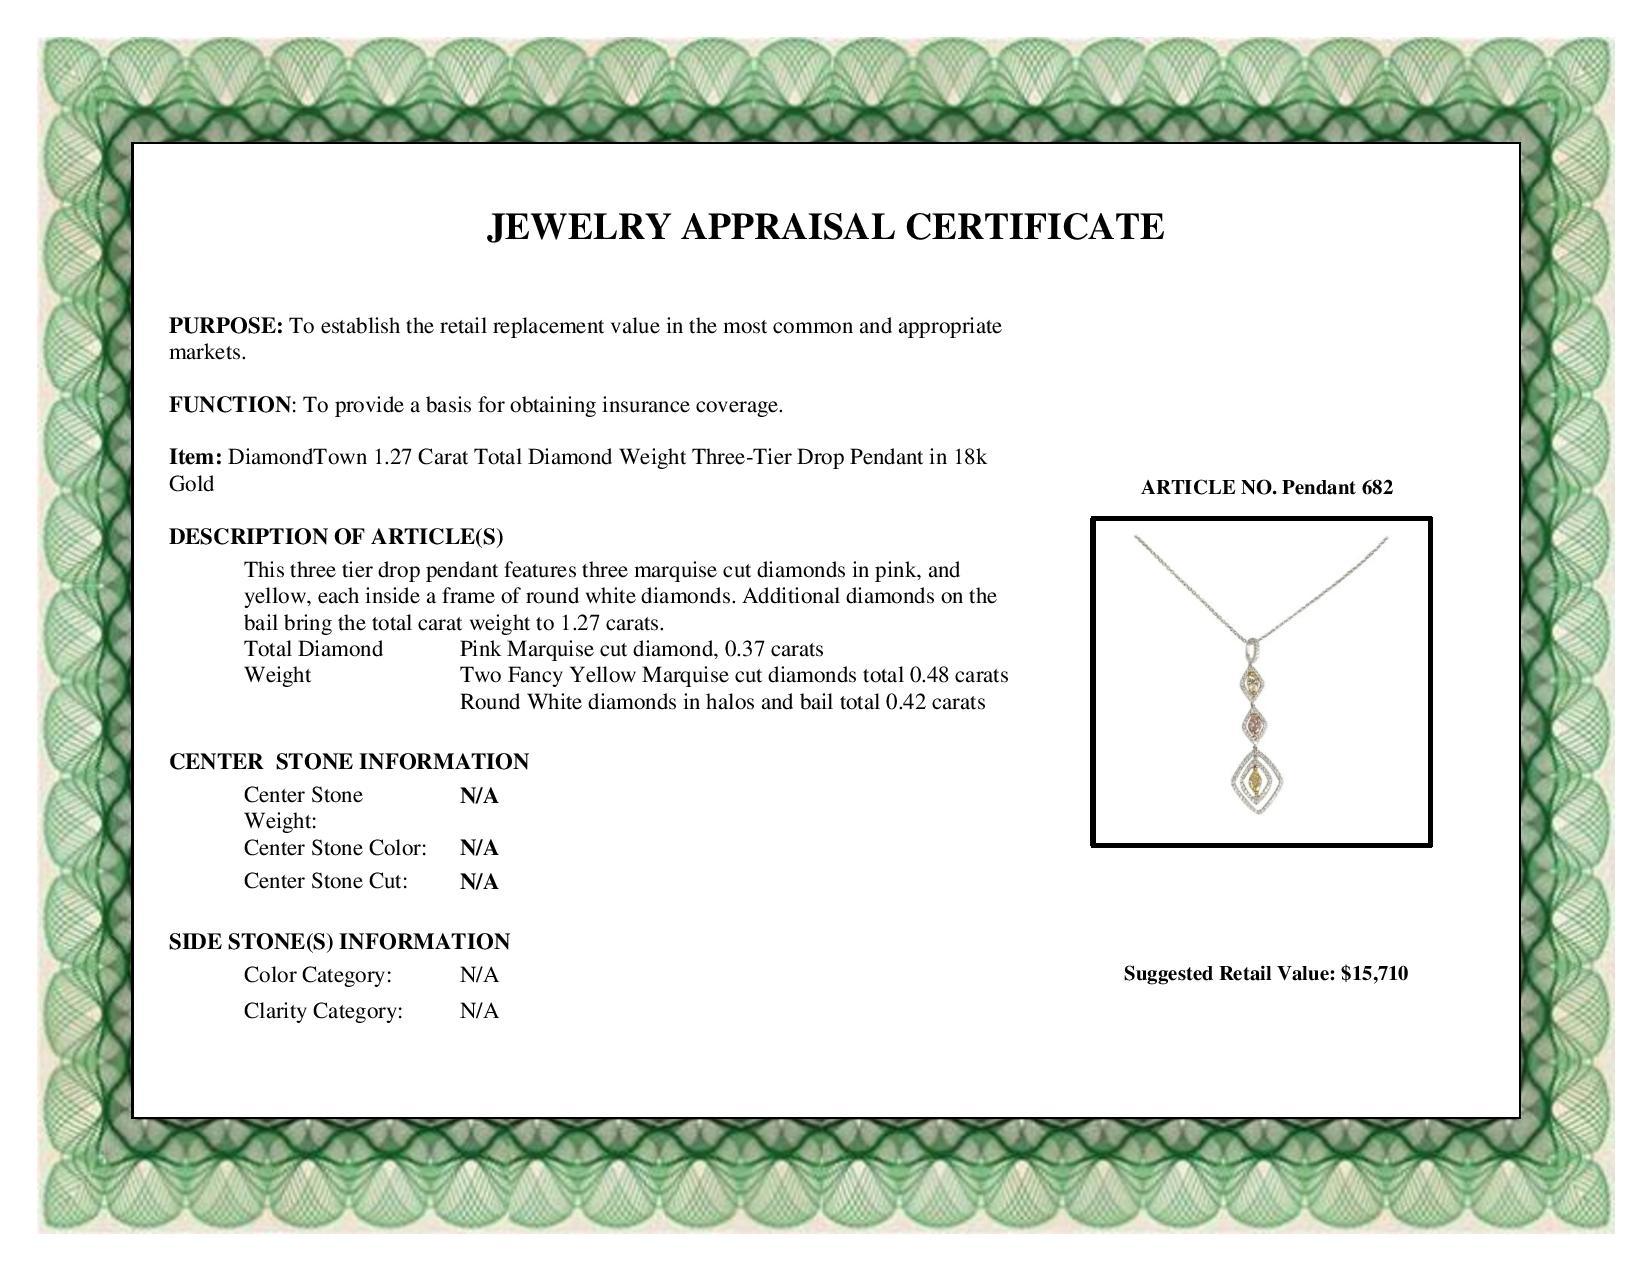 Women's 1.27 Carat Total Diamond Weight Three-Tier Drop Pendant in 18k Gold